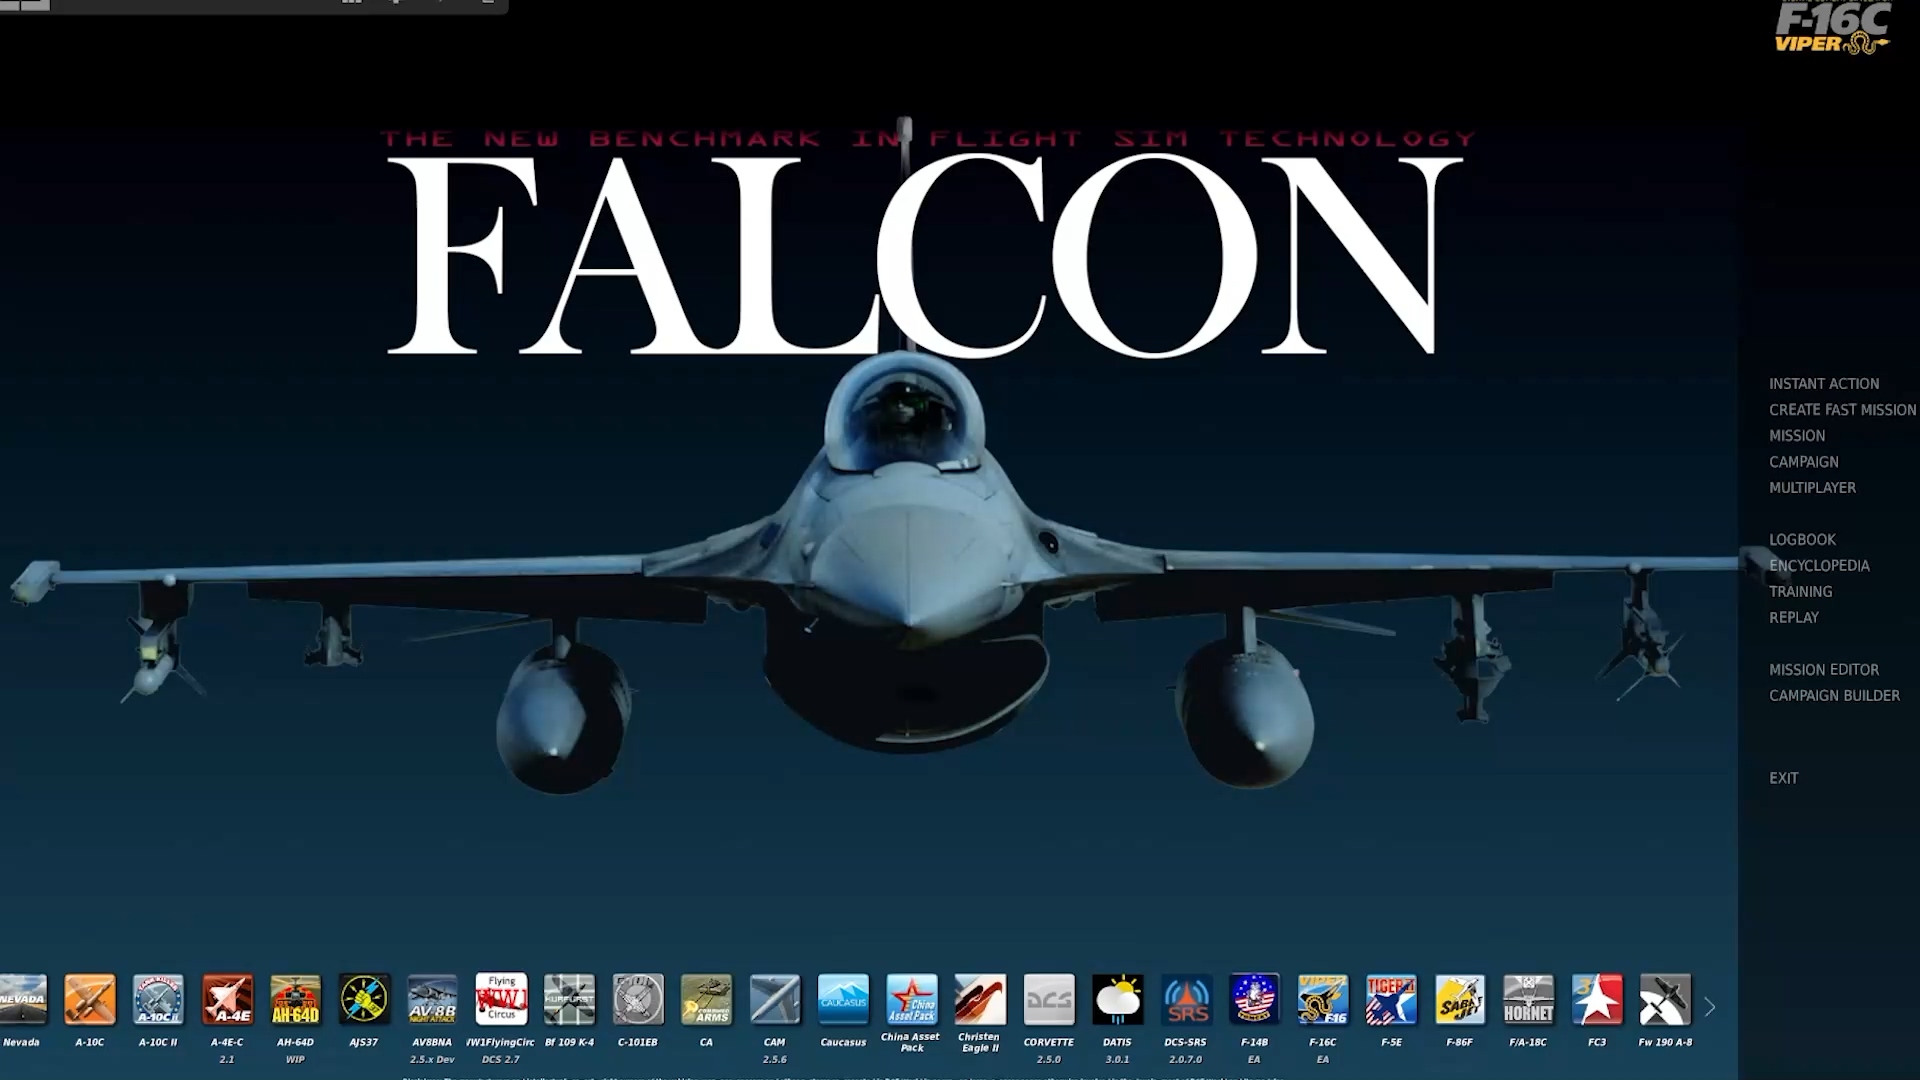 F-16C "FALCON 4.0" Style theme